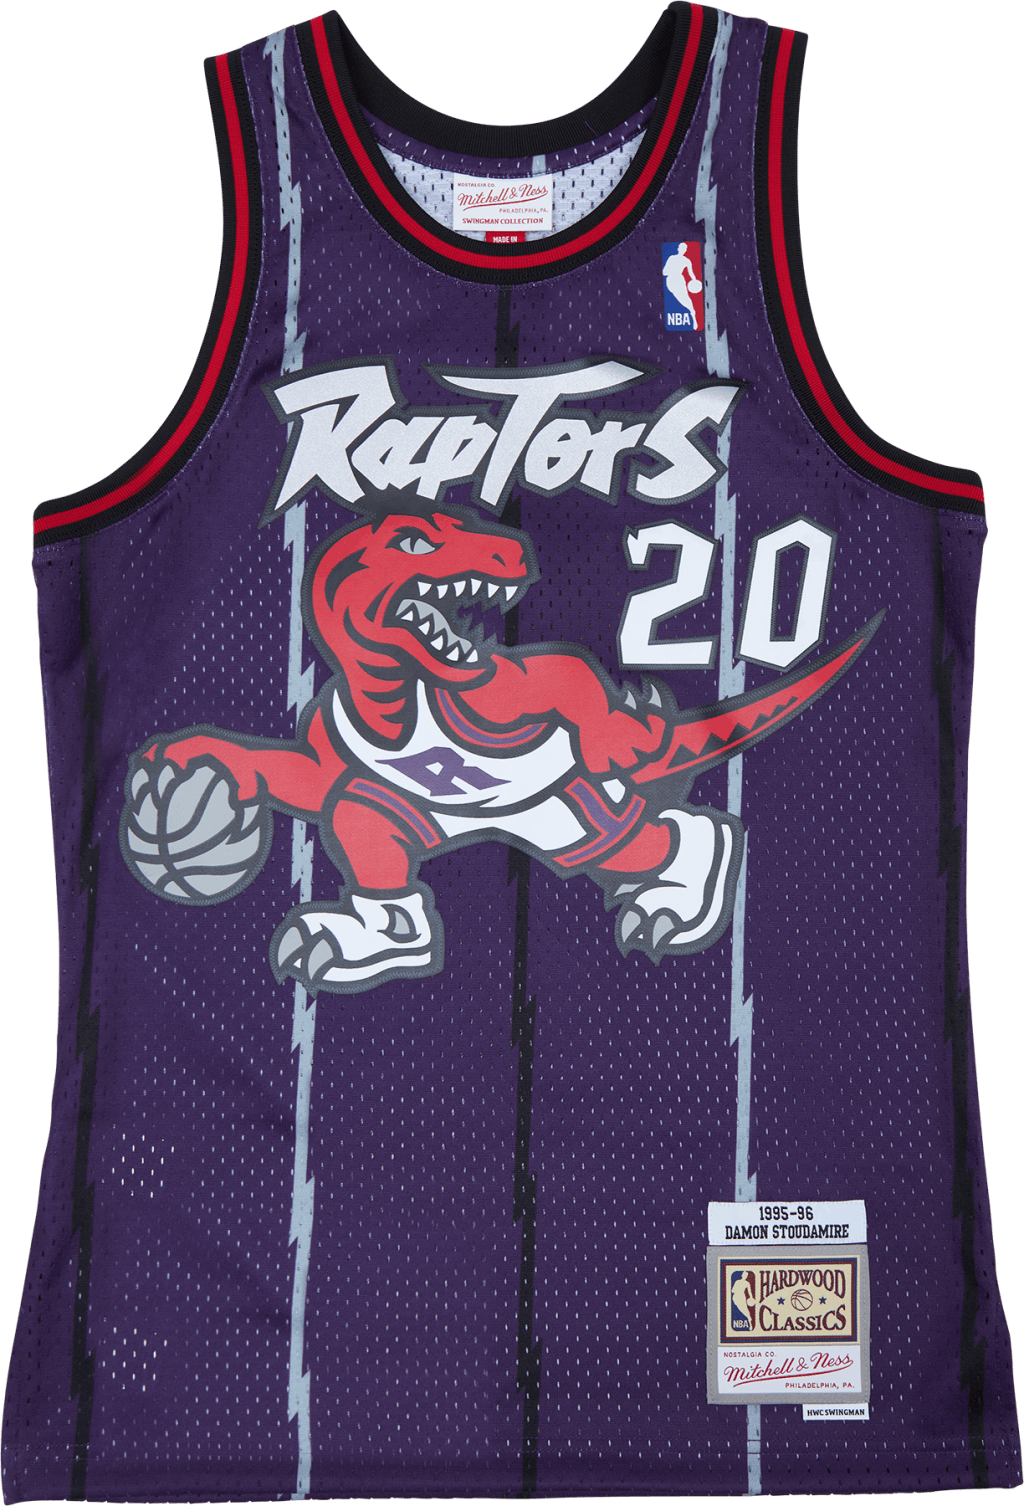 Raptors Road 95-96 Swingman Jersey - Damon Stoudamire